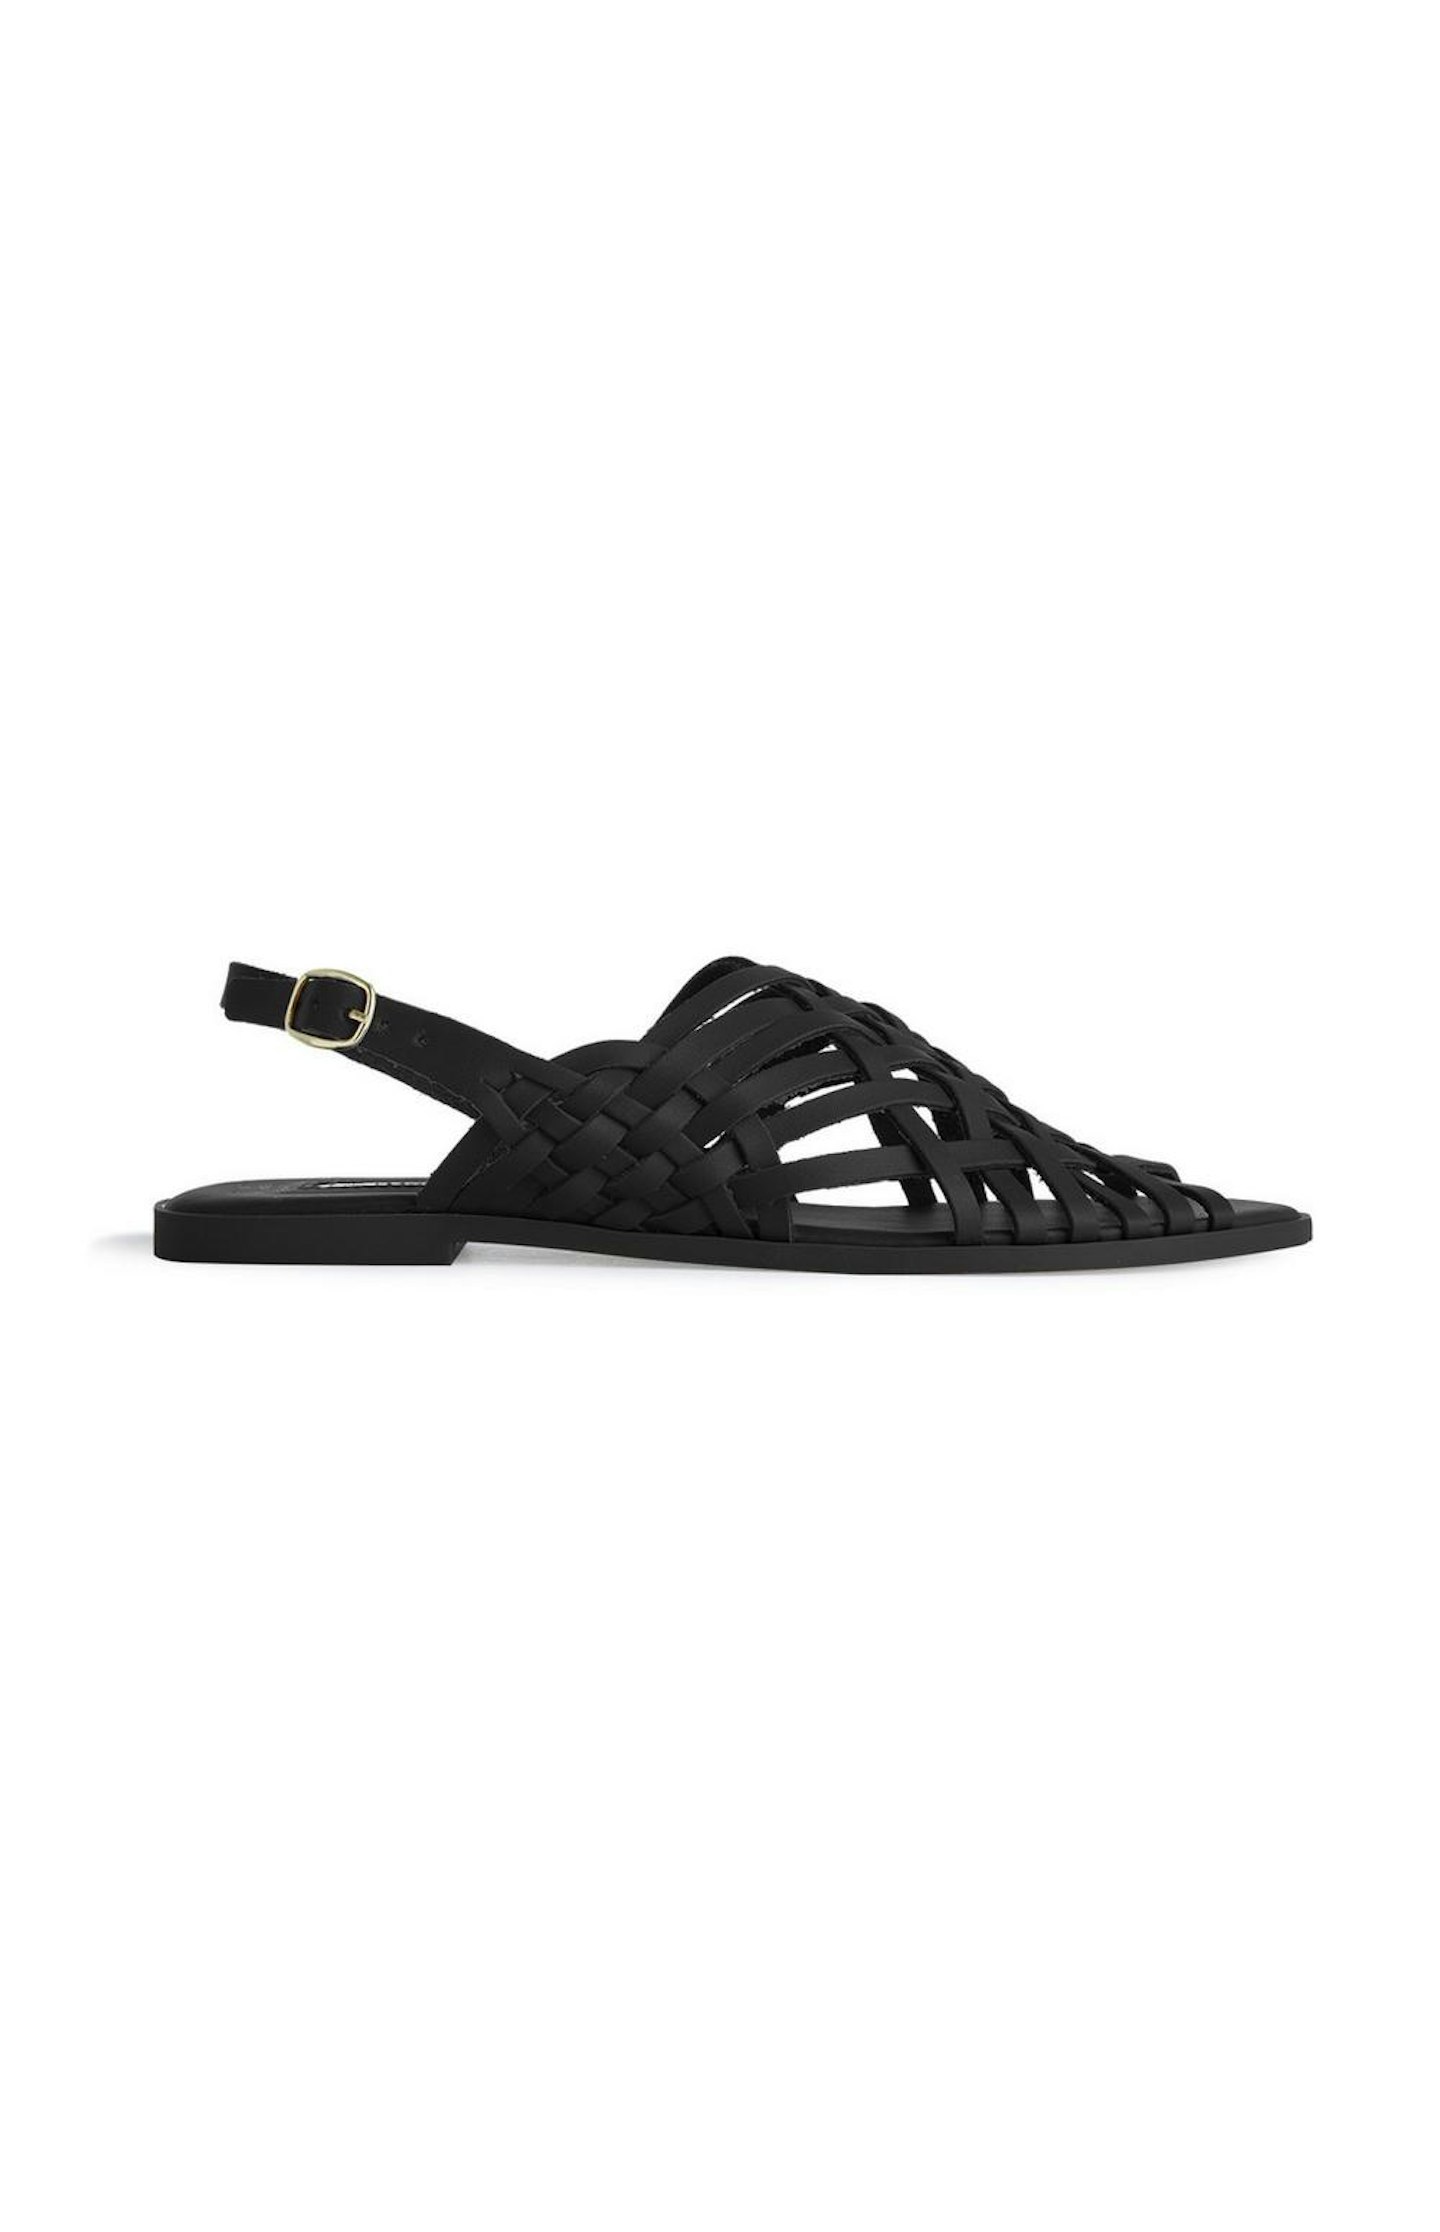 Primark, Black Sandals, £8